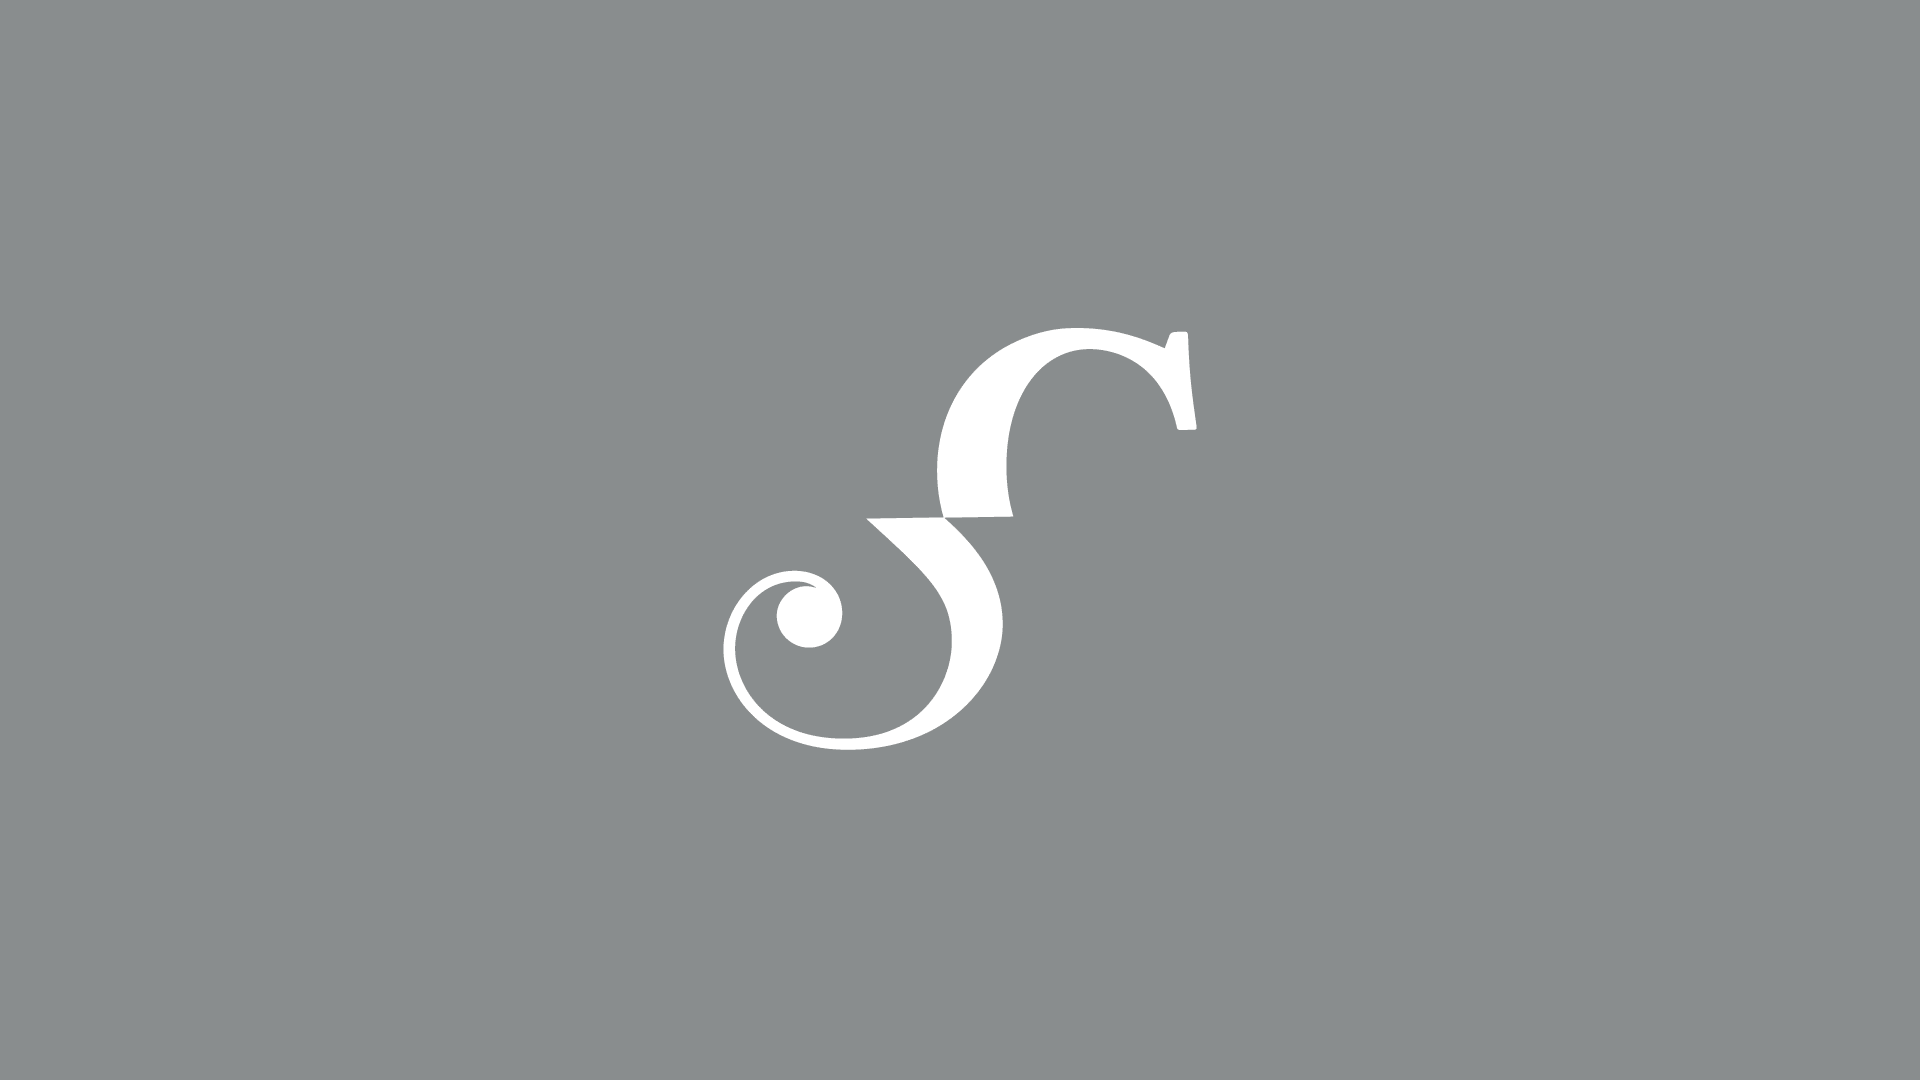 CS Luxury icon on gray